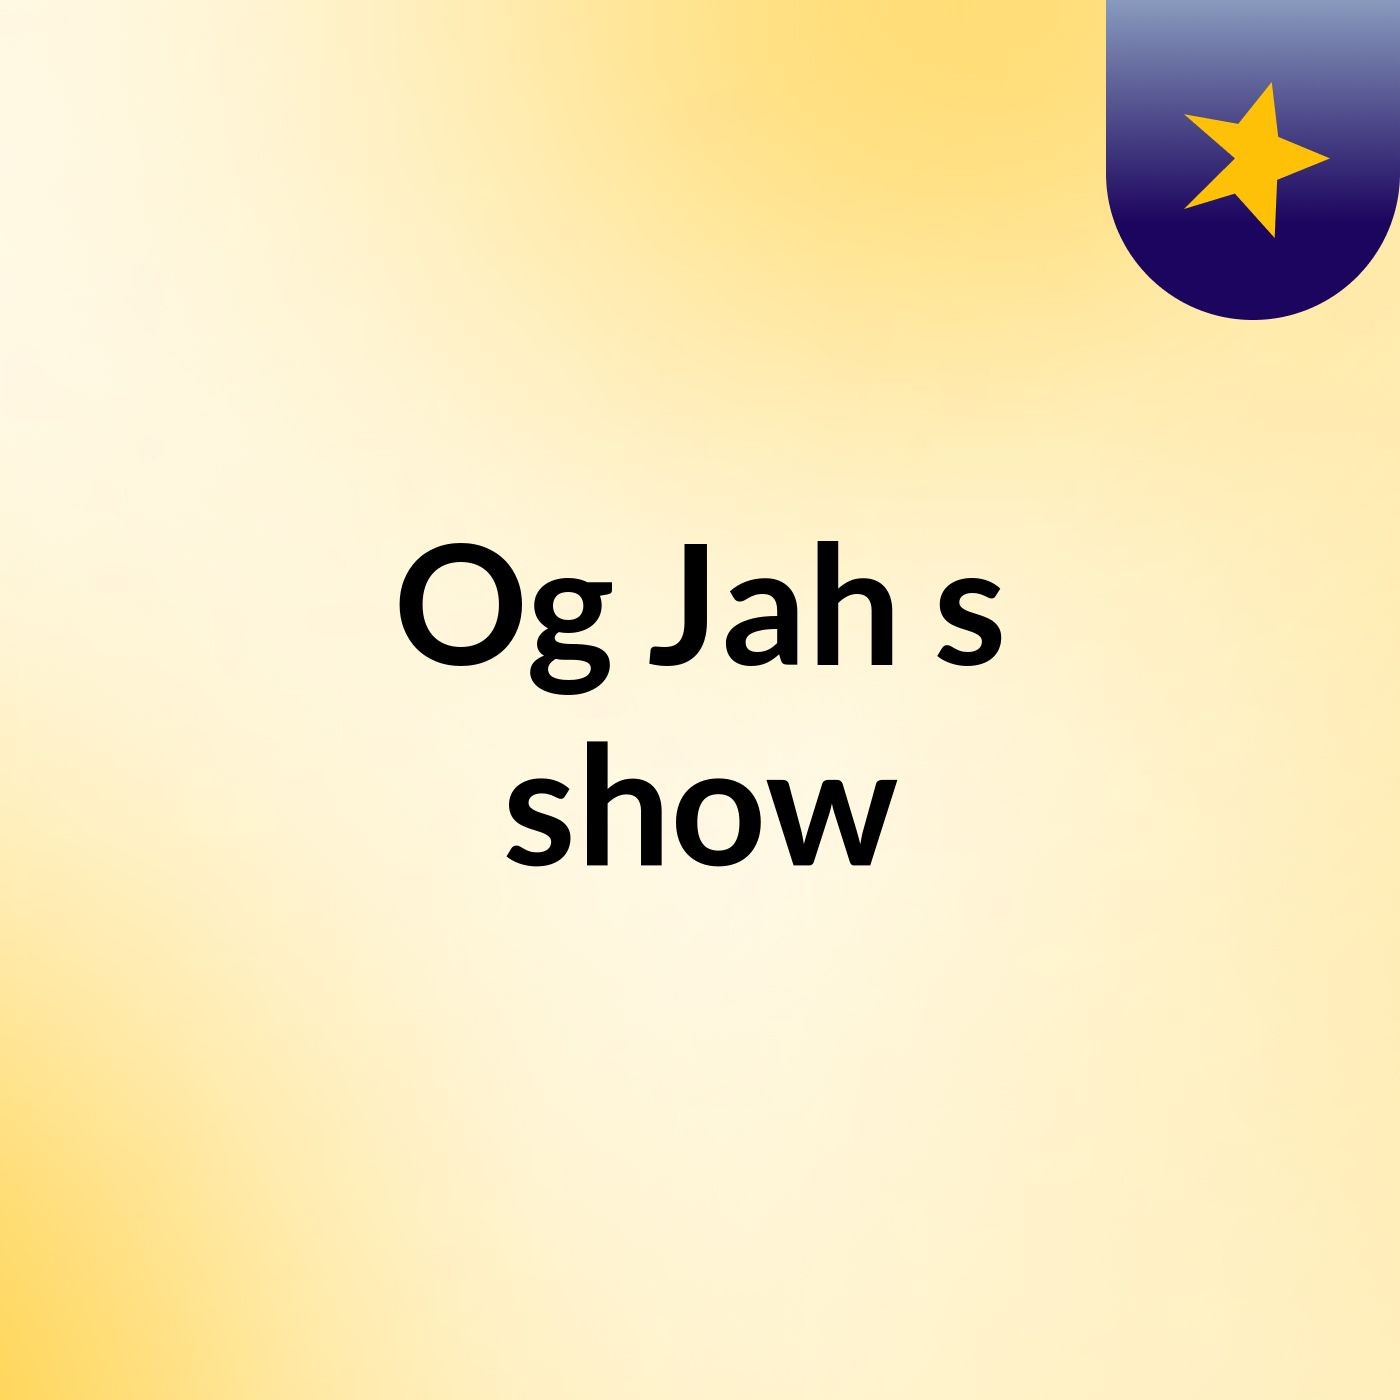 Og Jah's show